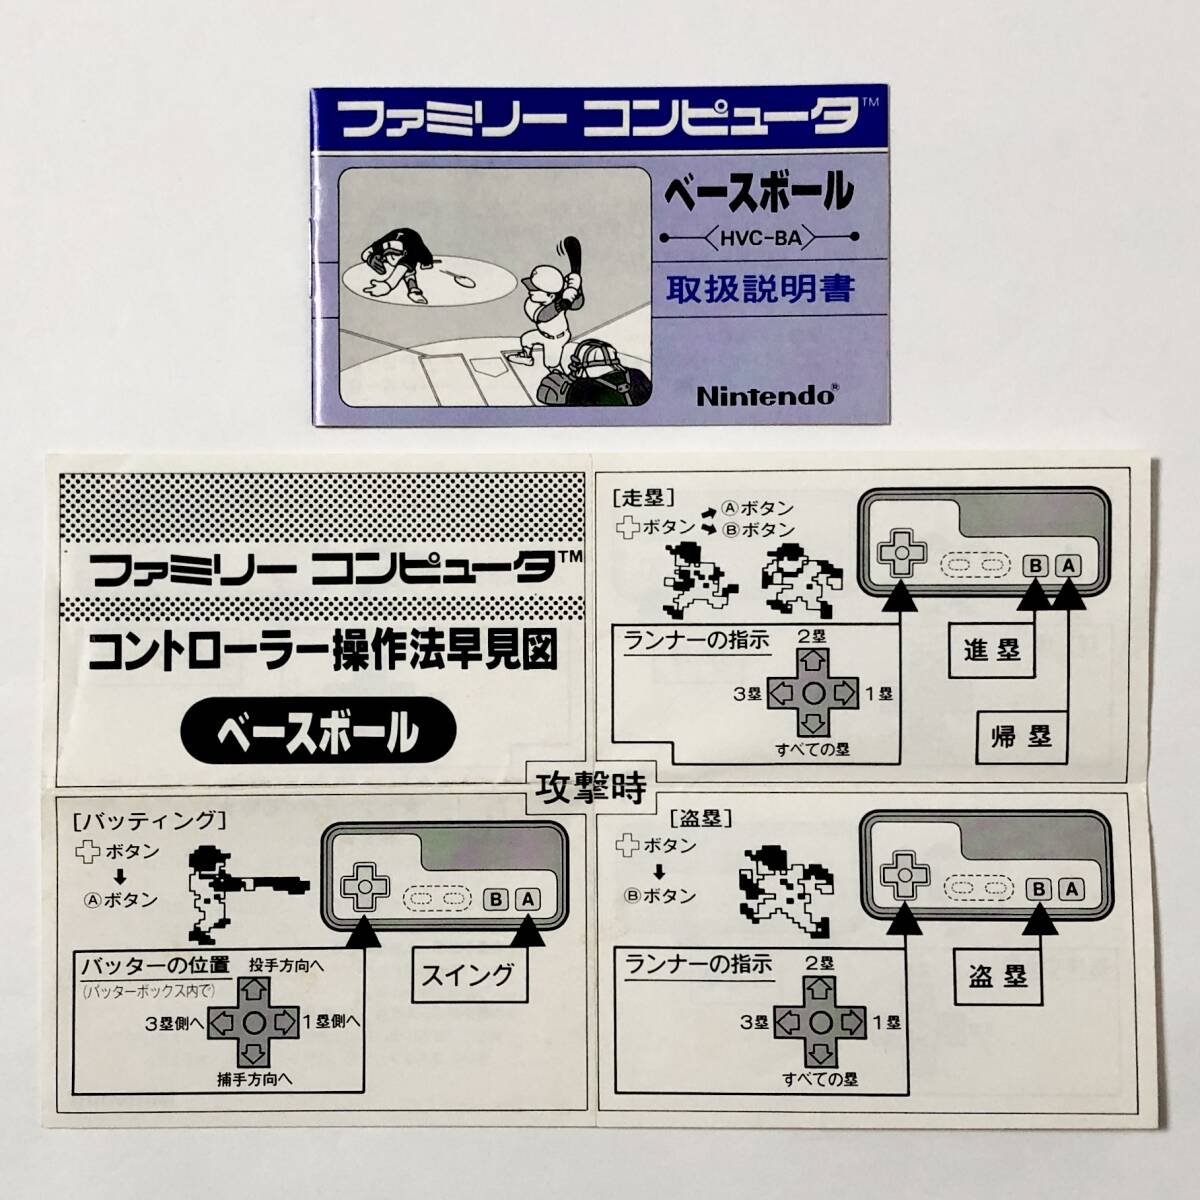 ファミコン ベースボール 小箱版 箱説付き 痛みあり 操作法早見図付き Nintendo Famicom Baseball Small Box Version CIB Testedの画像9